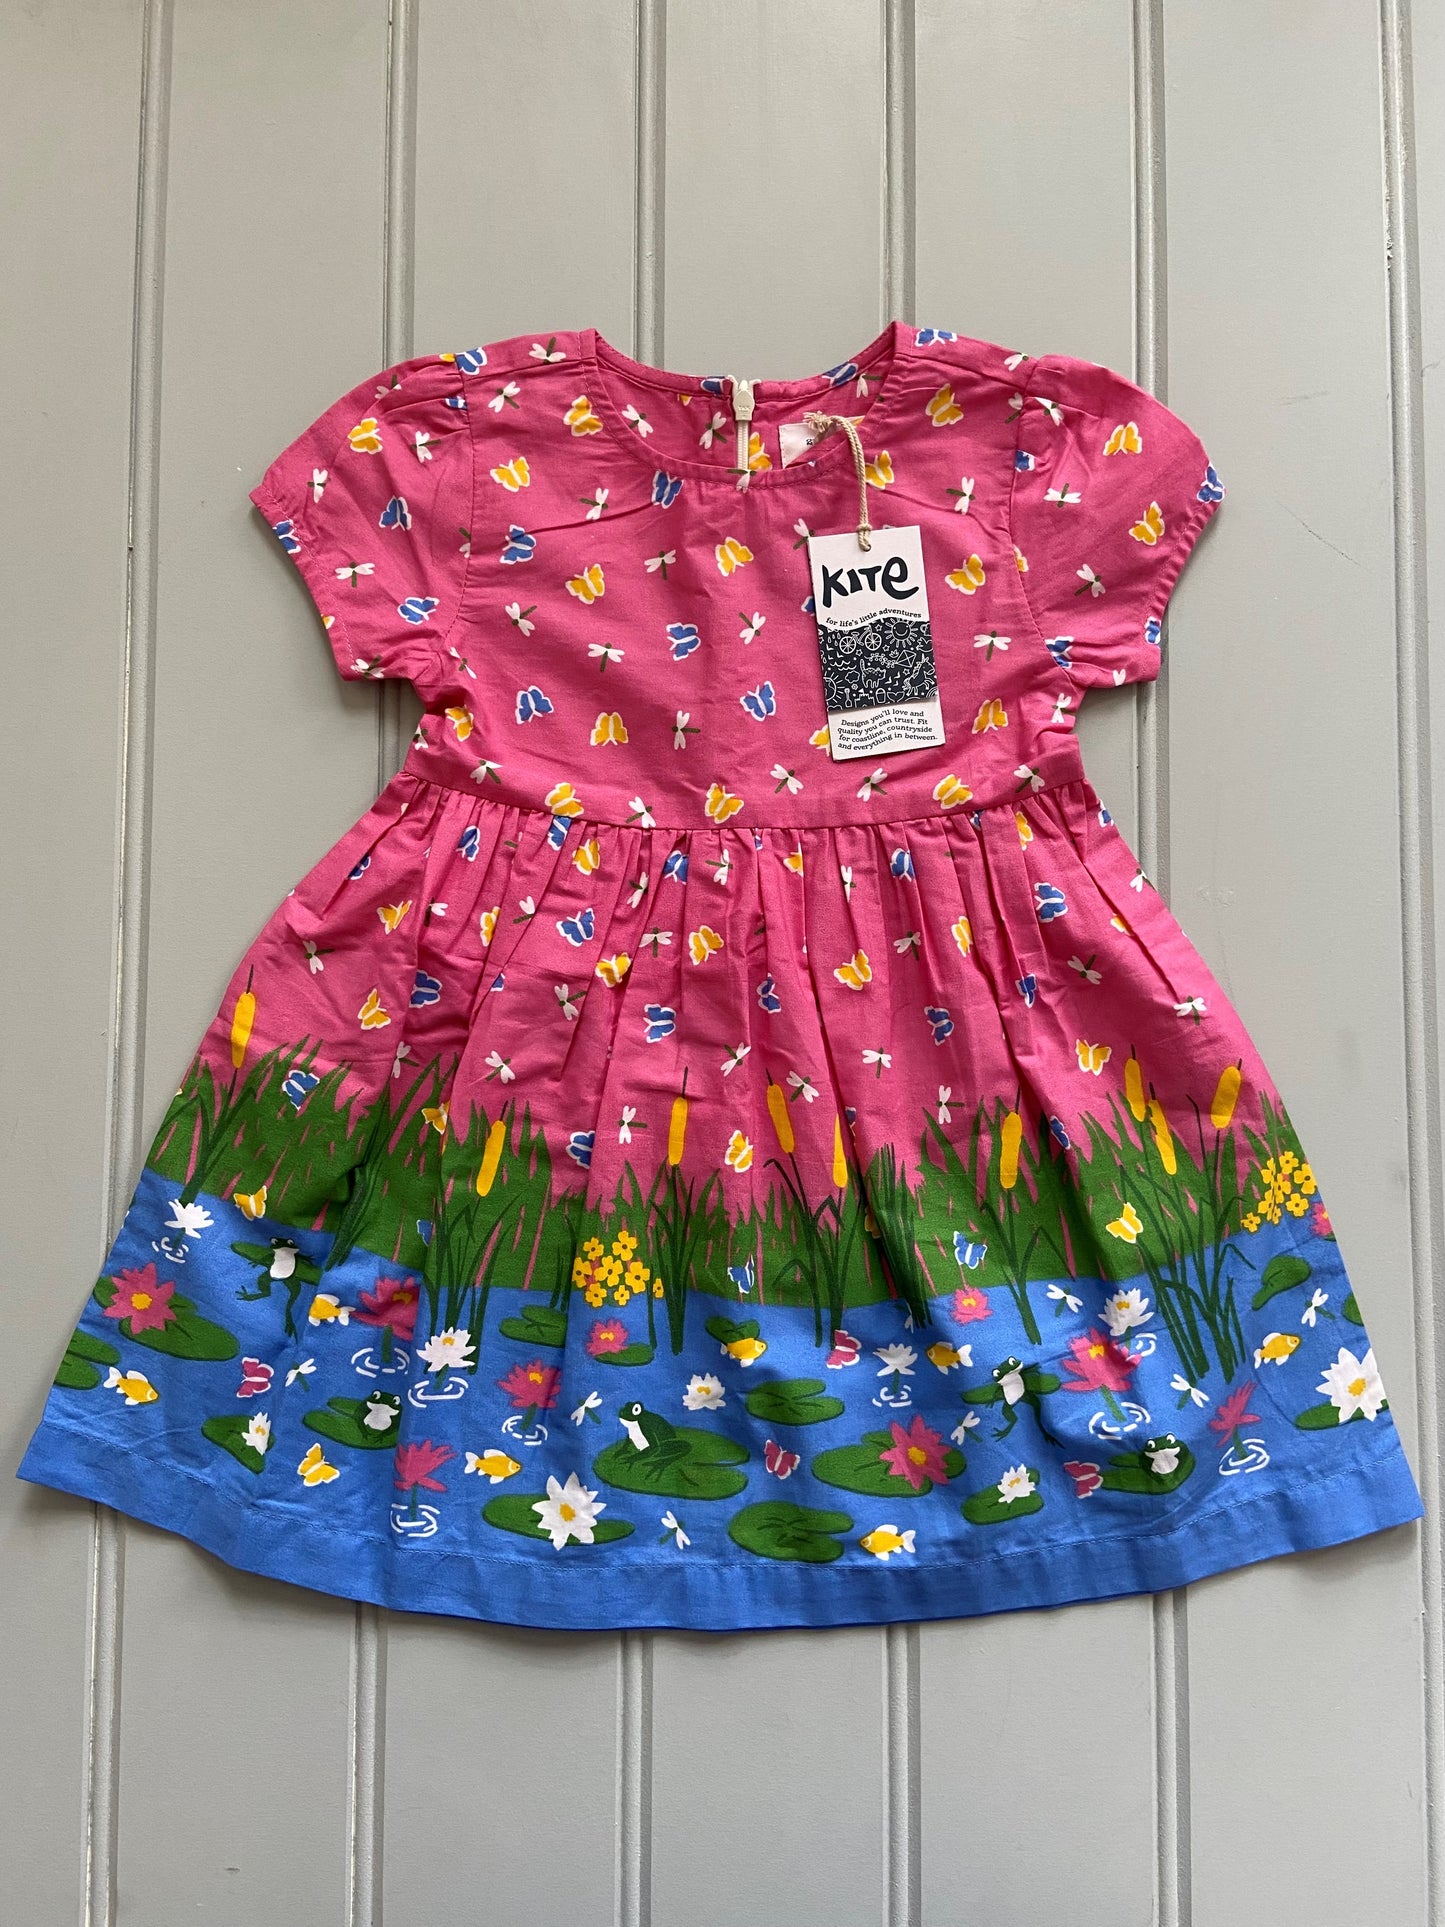 Pre-loved Summer Dress by Kite BNWT